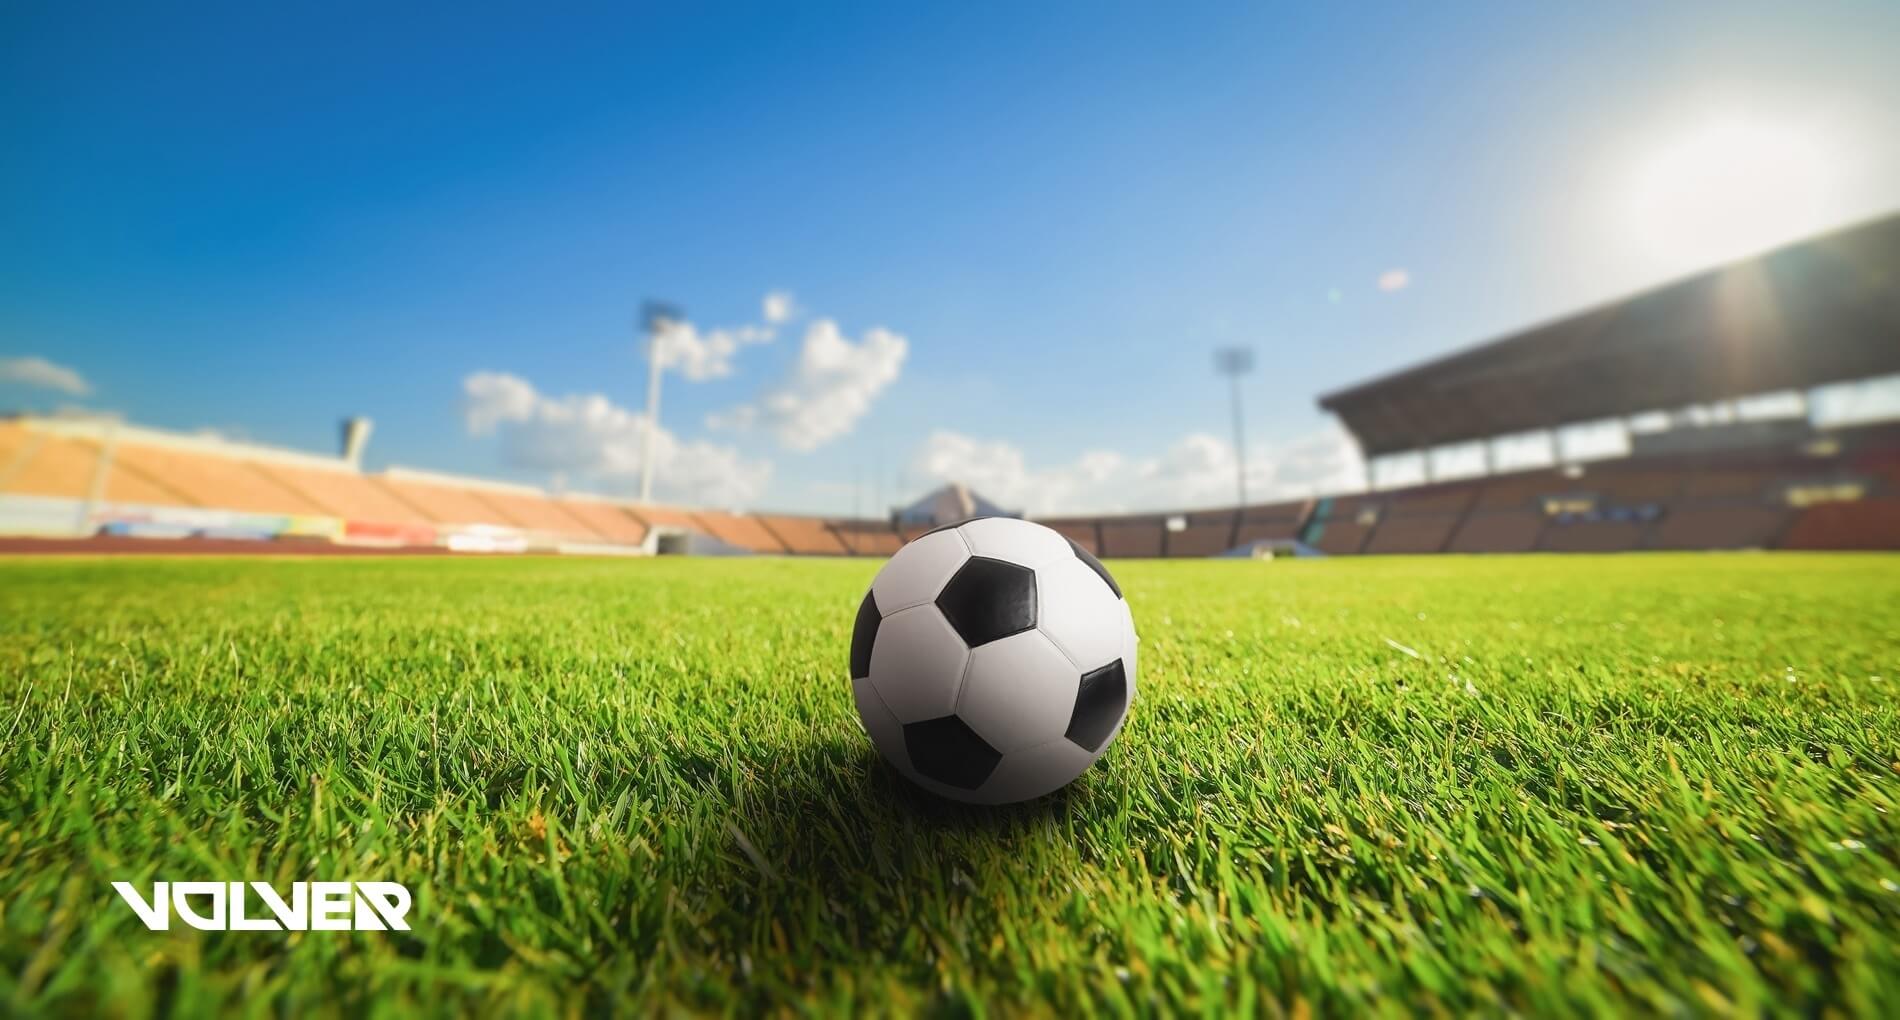 APMP realiza Jogos de Futebol para inauguração de quadra sintética na Sede  de Curitiba - Notícias - APMP